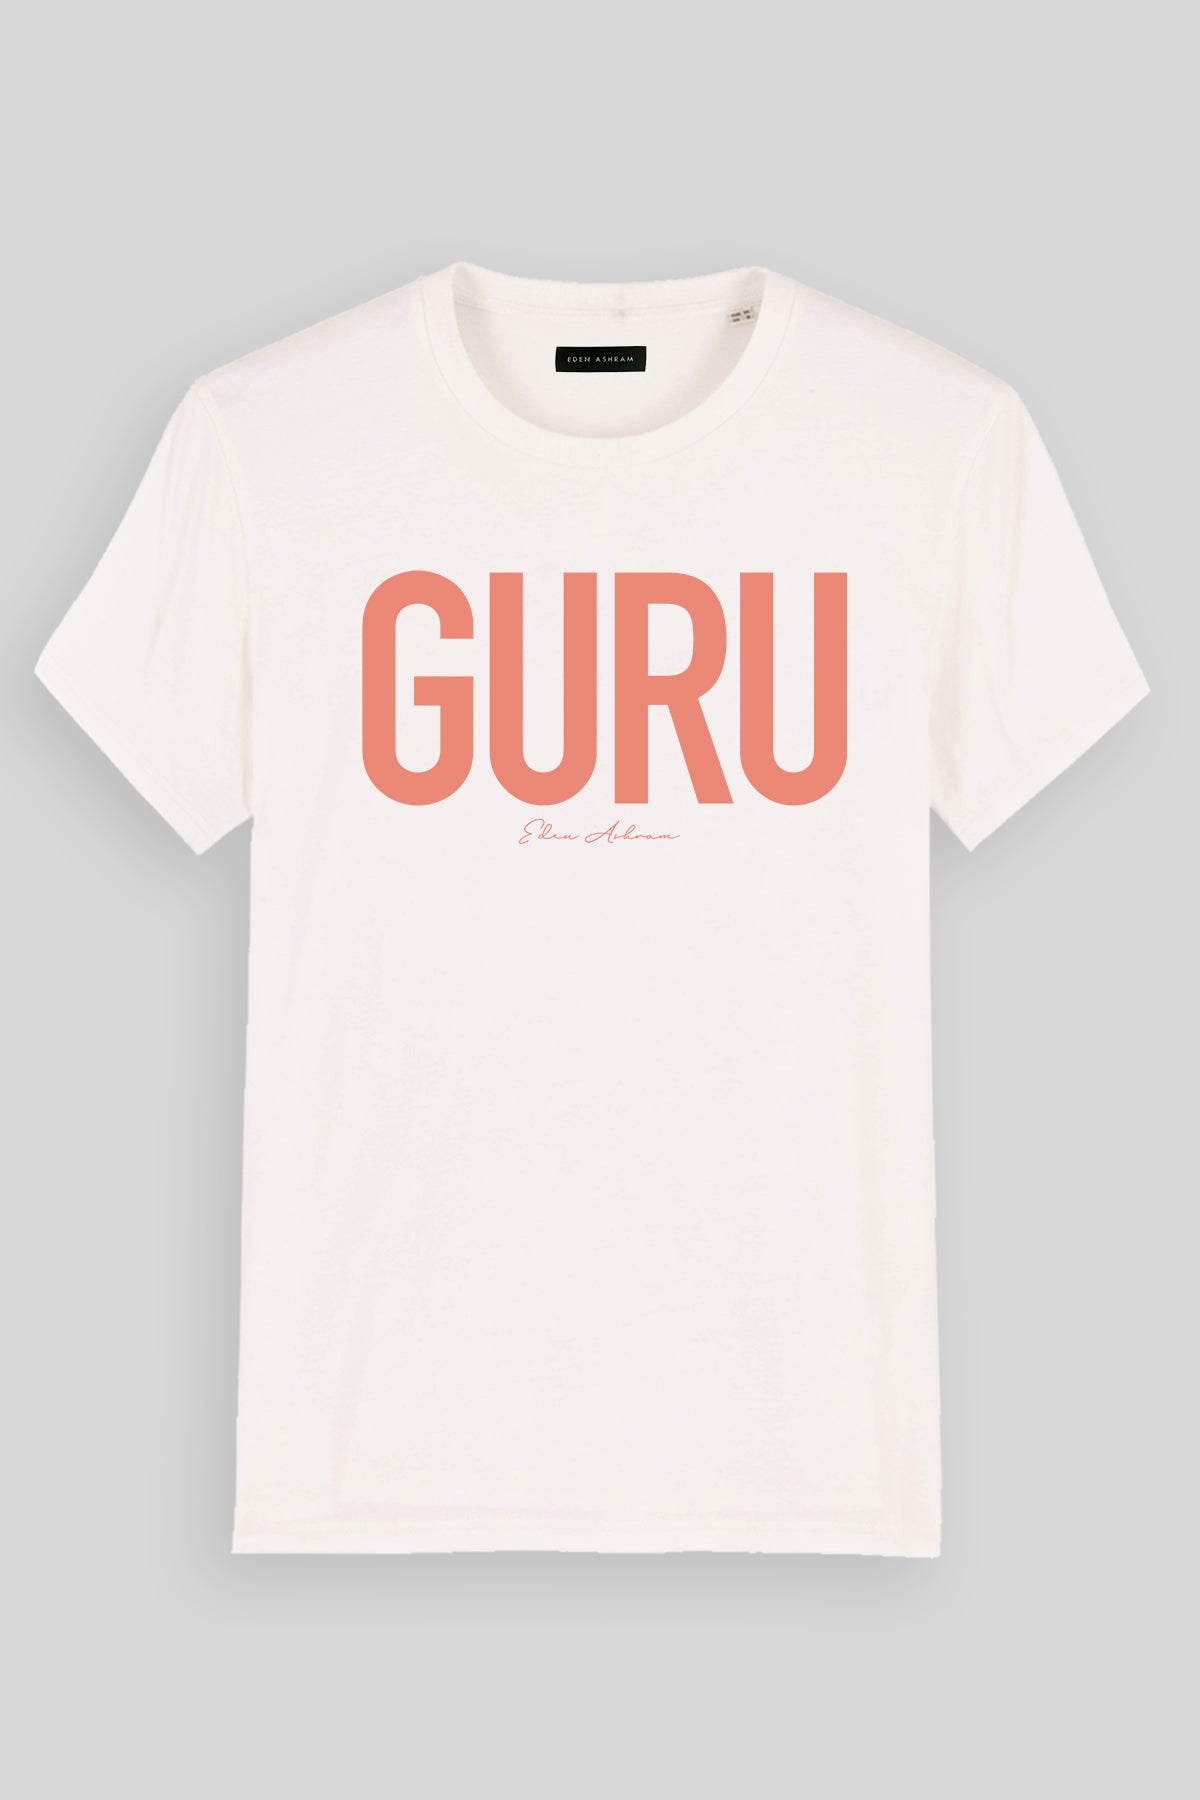 EDEN ASHRAM Guru Premium Classic T-Shirt Off White